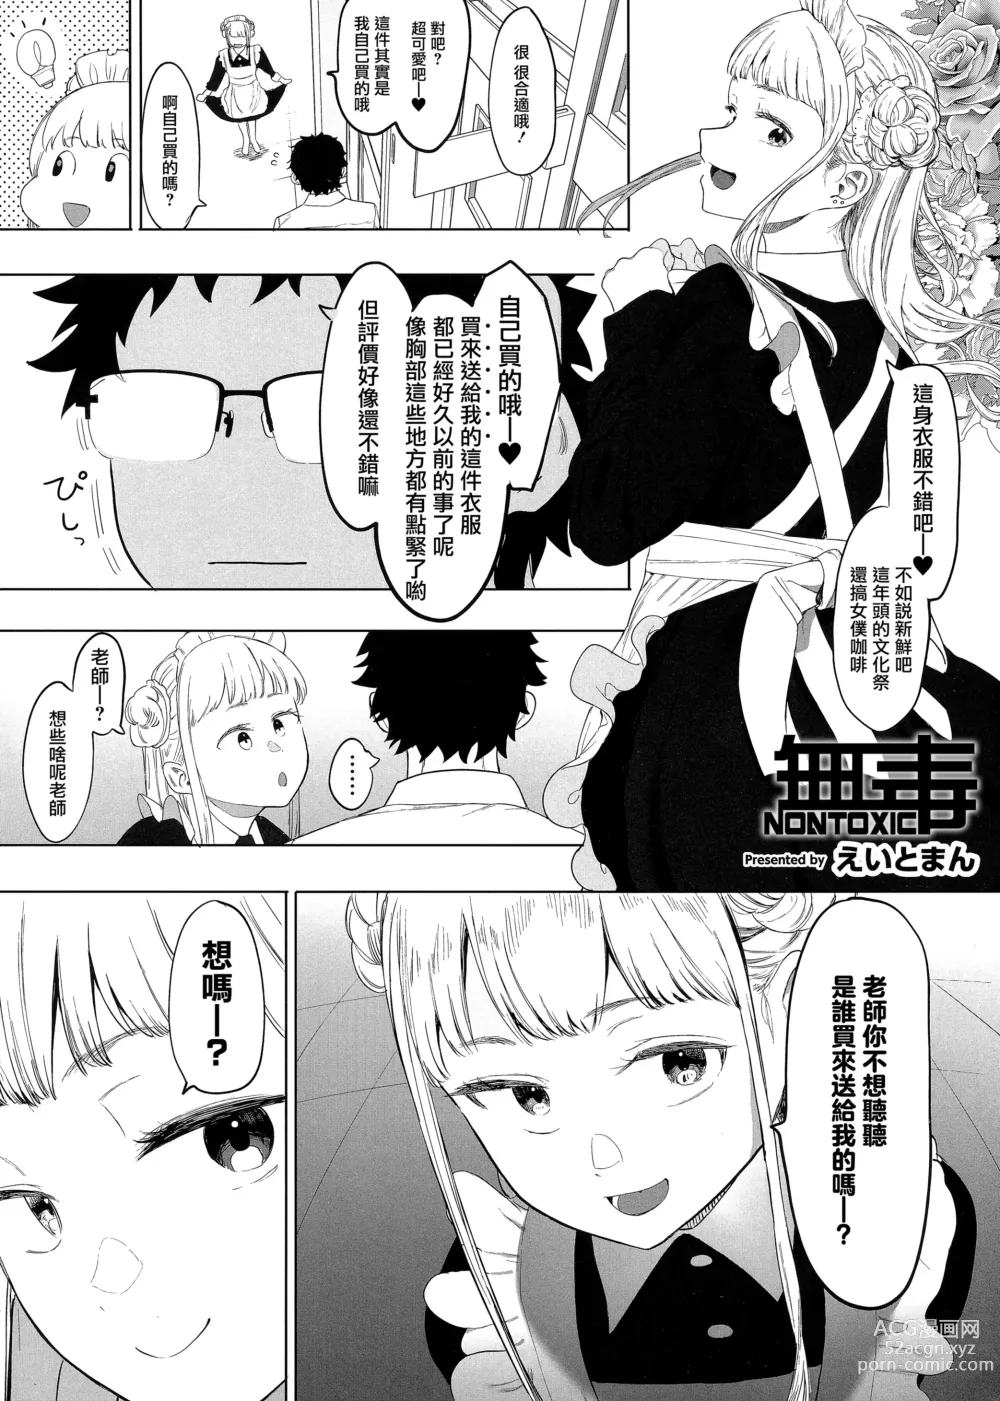 Page 1 of manga Untitled